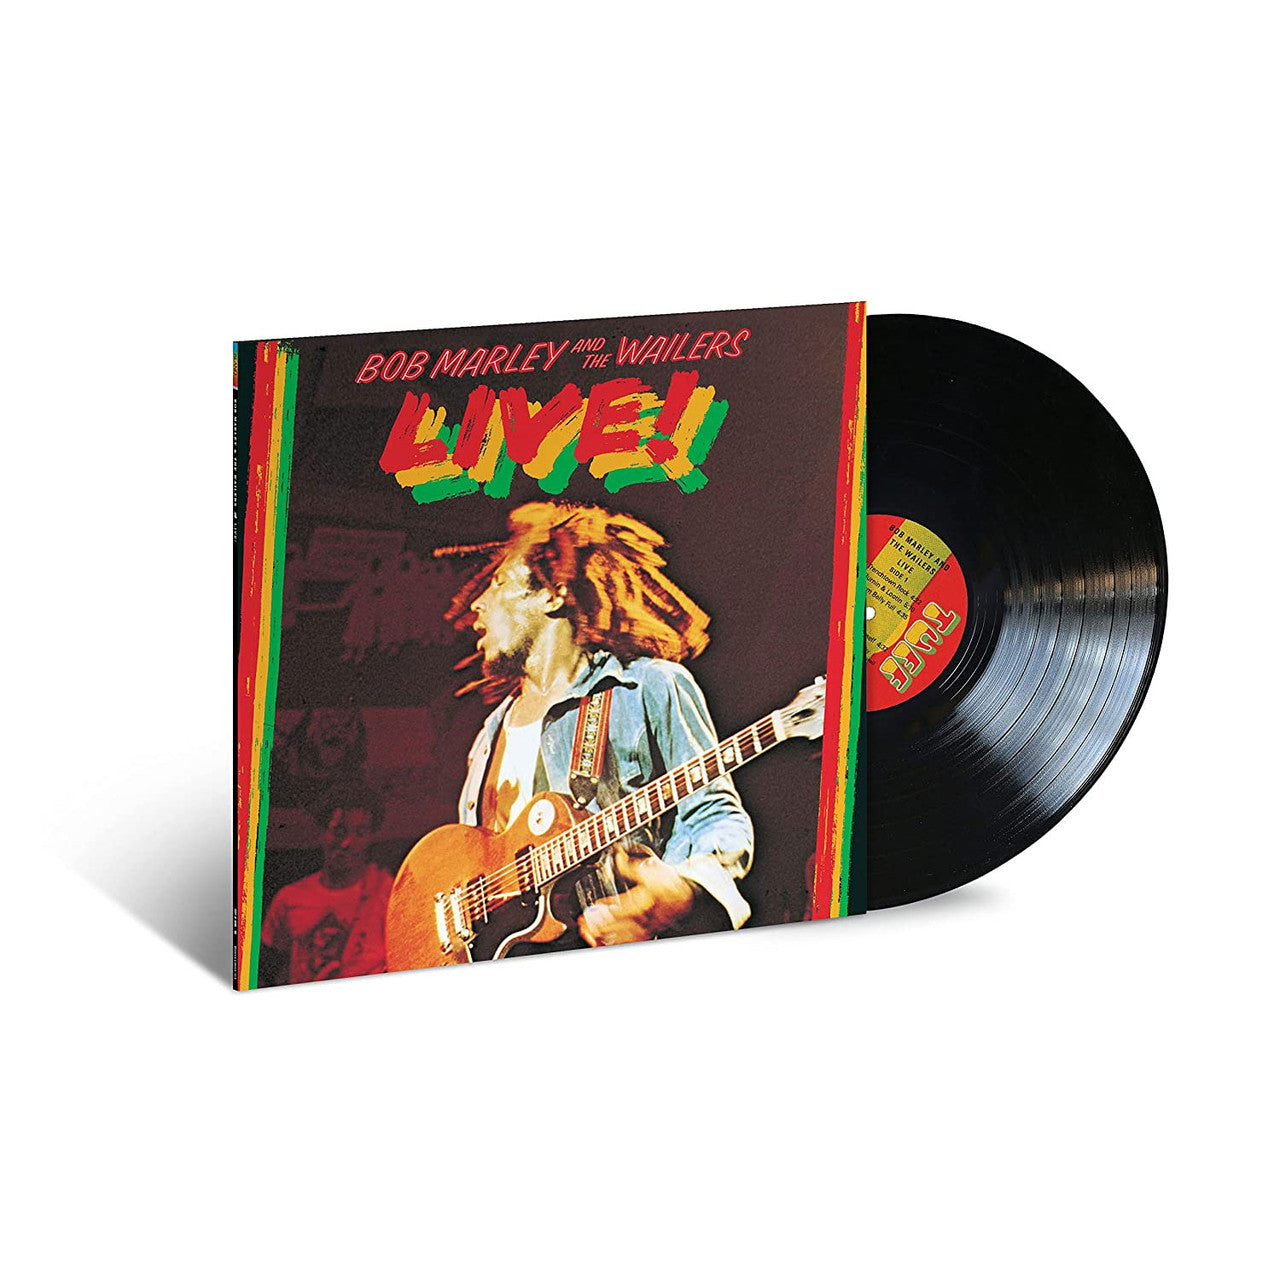 Bob Marley und die Wailers – Live! - Tuff Gong LP